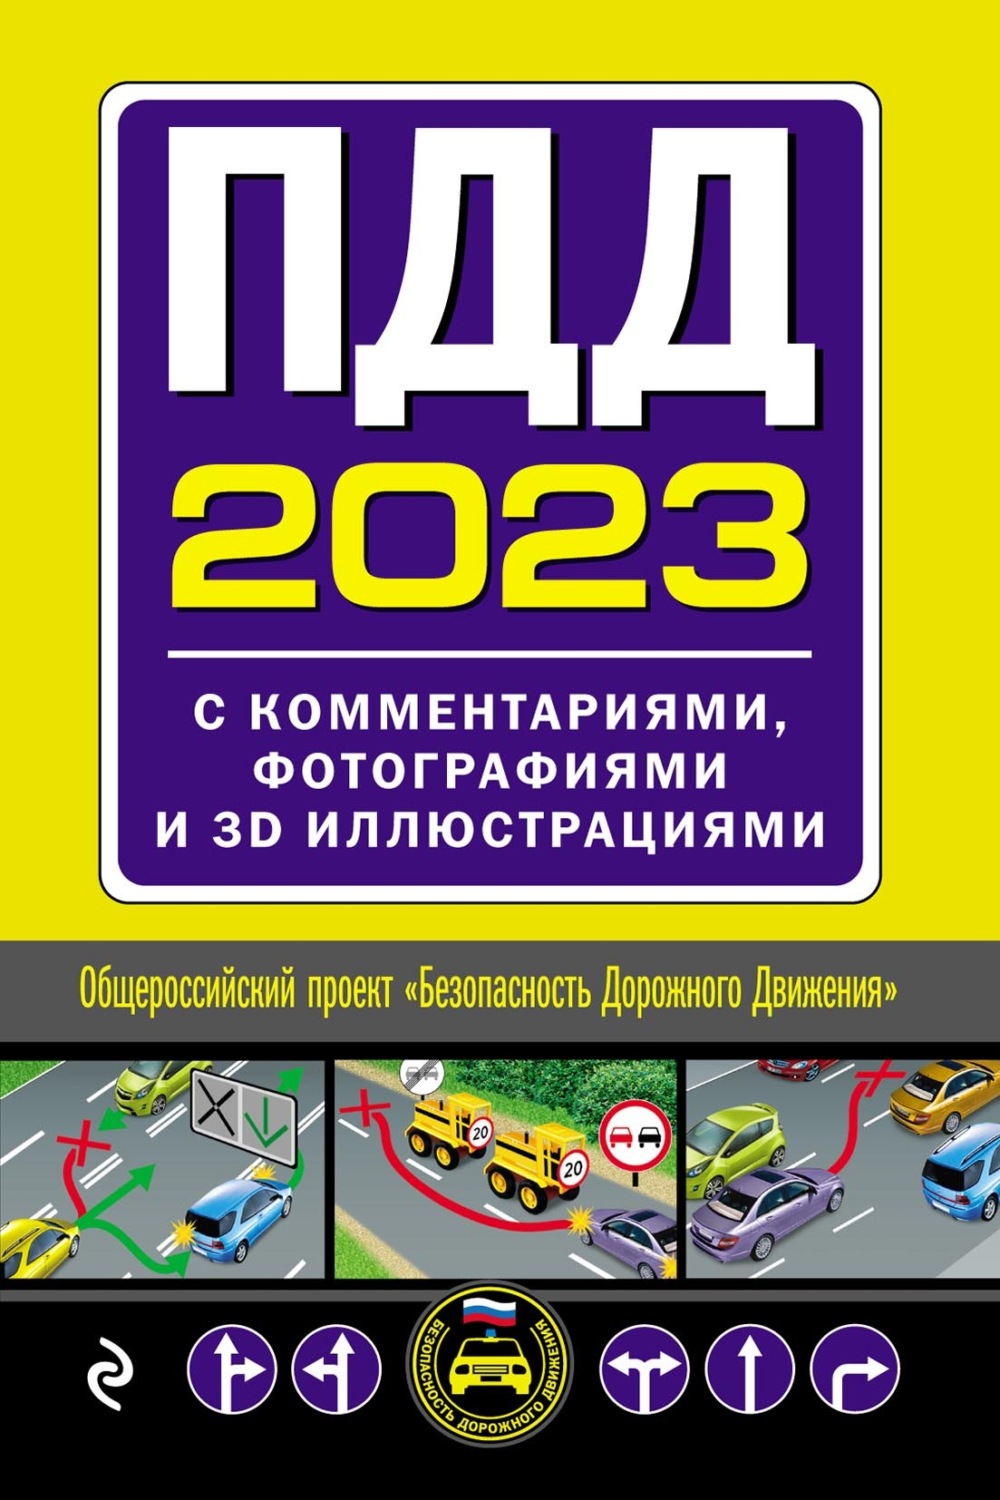 Новые Правила Дорожного Движения - ПДД 2022 года